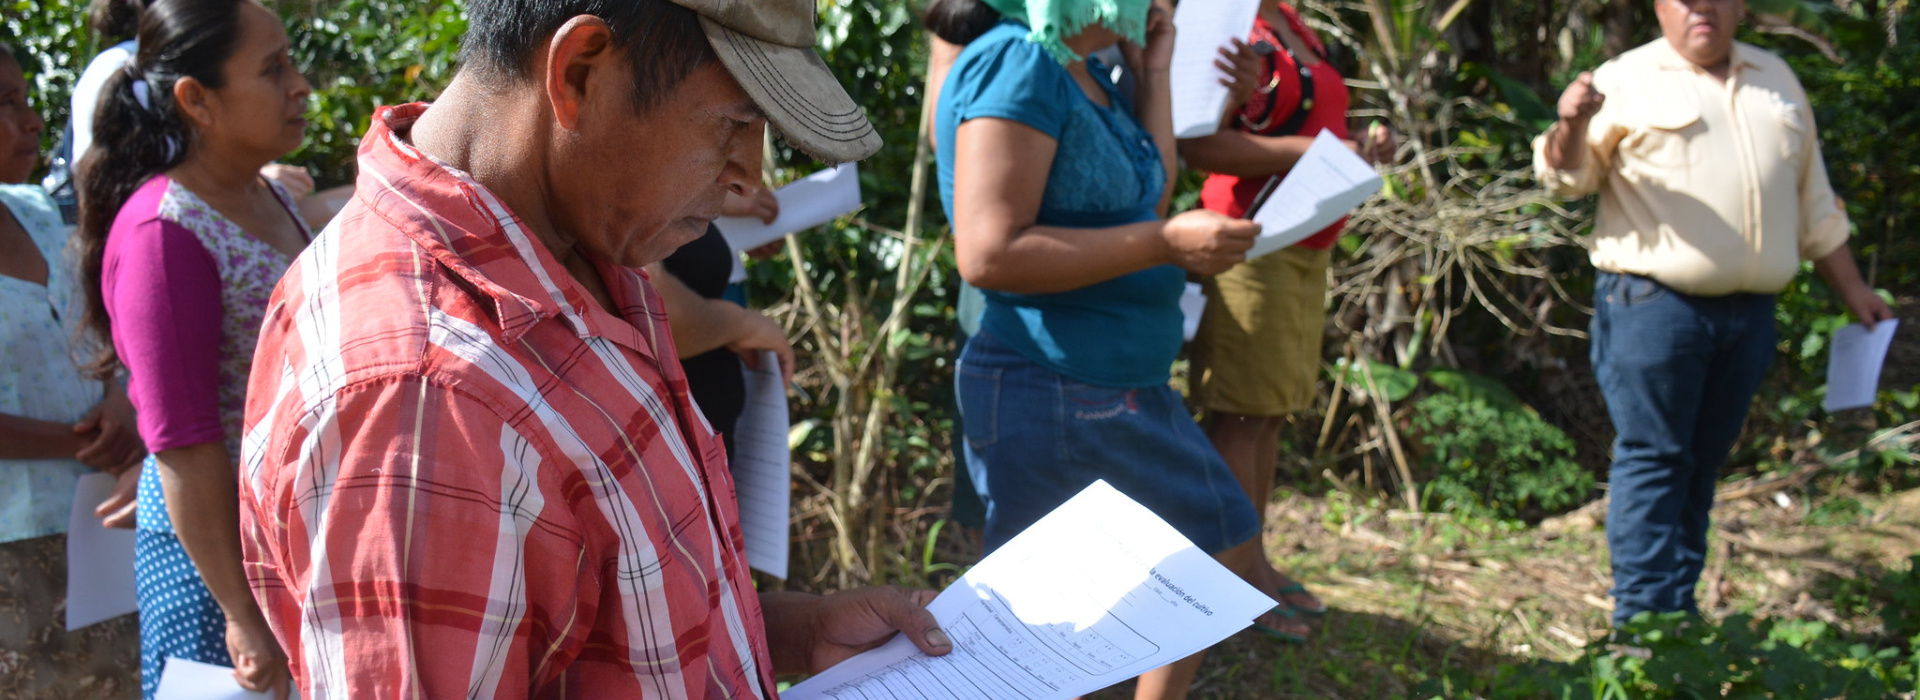 Crop evaluation in La Prensa community of Olopa CSV, Guatemala